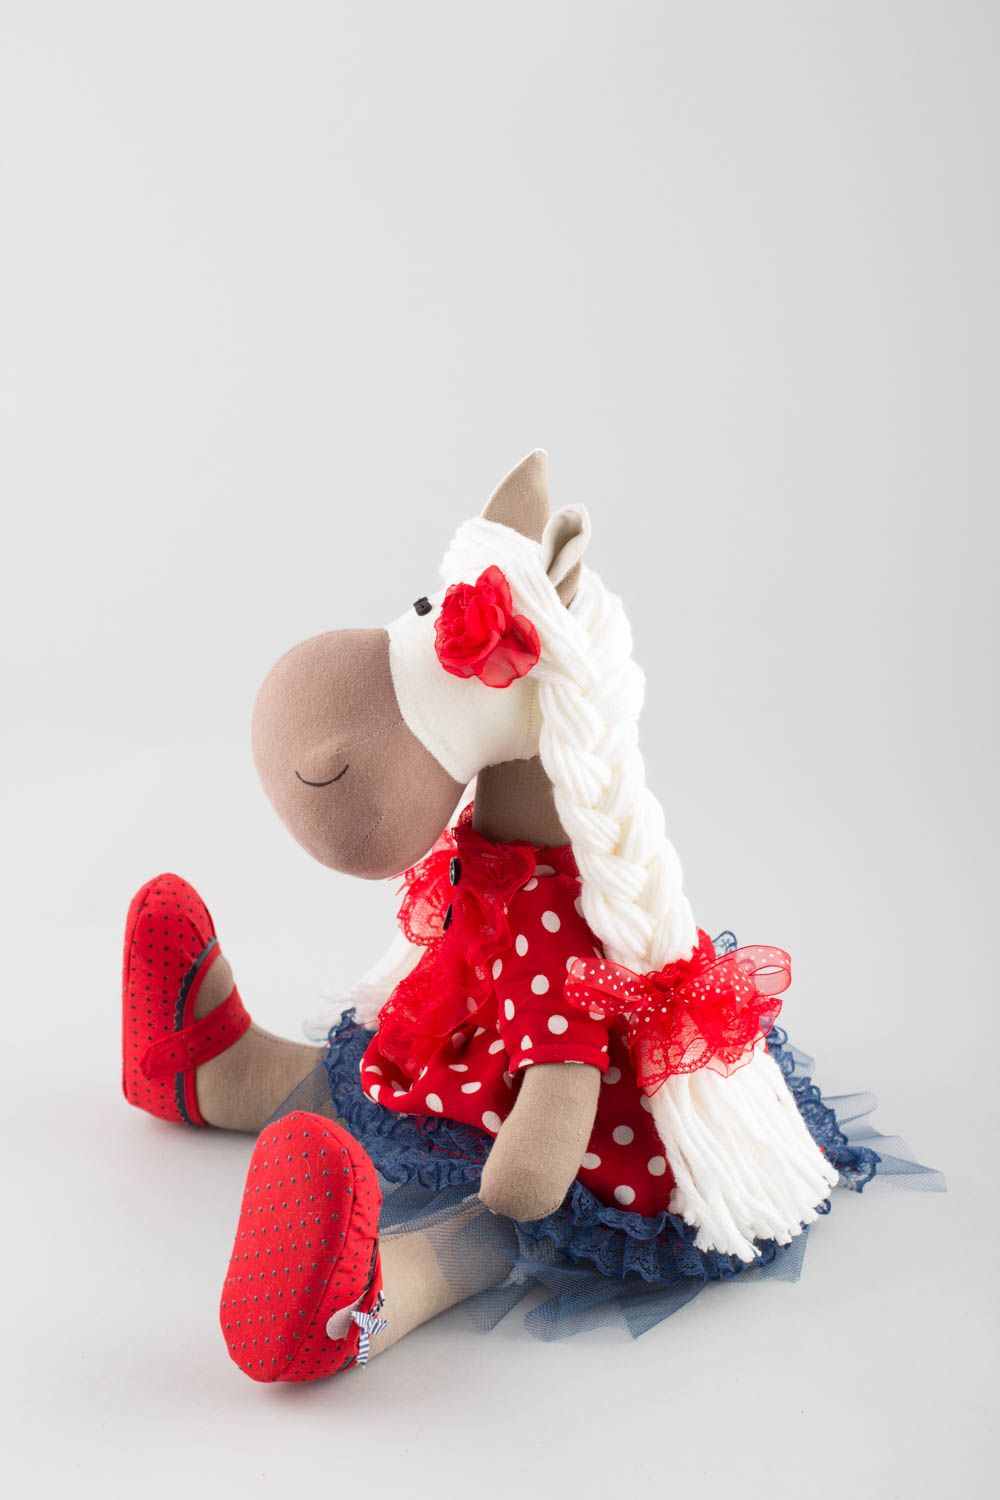 Textil Kuscheltier Pferd niedlich Spielzeug für Kinder und Dekor nette Schöne foto 4